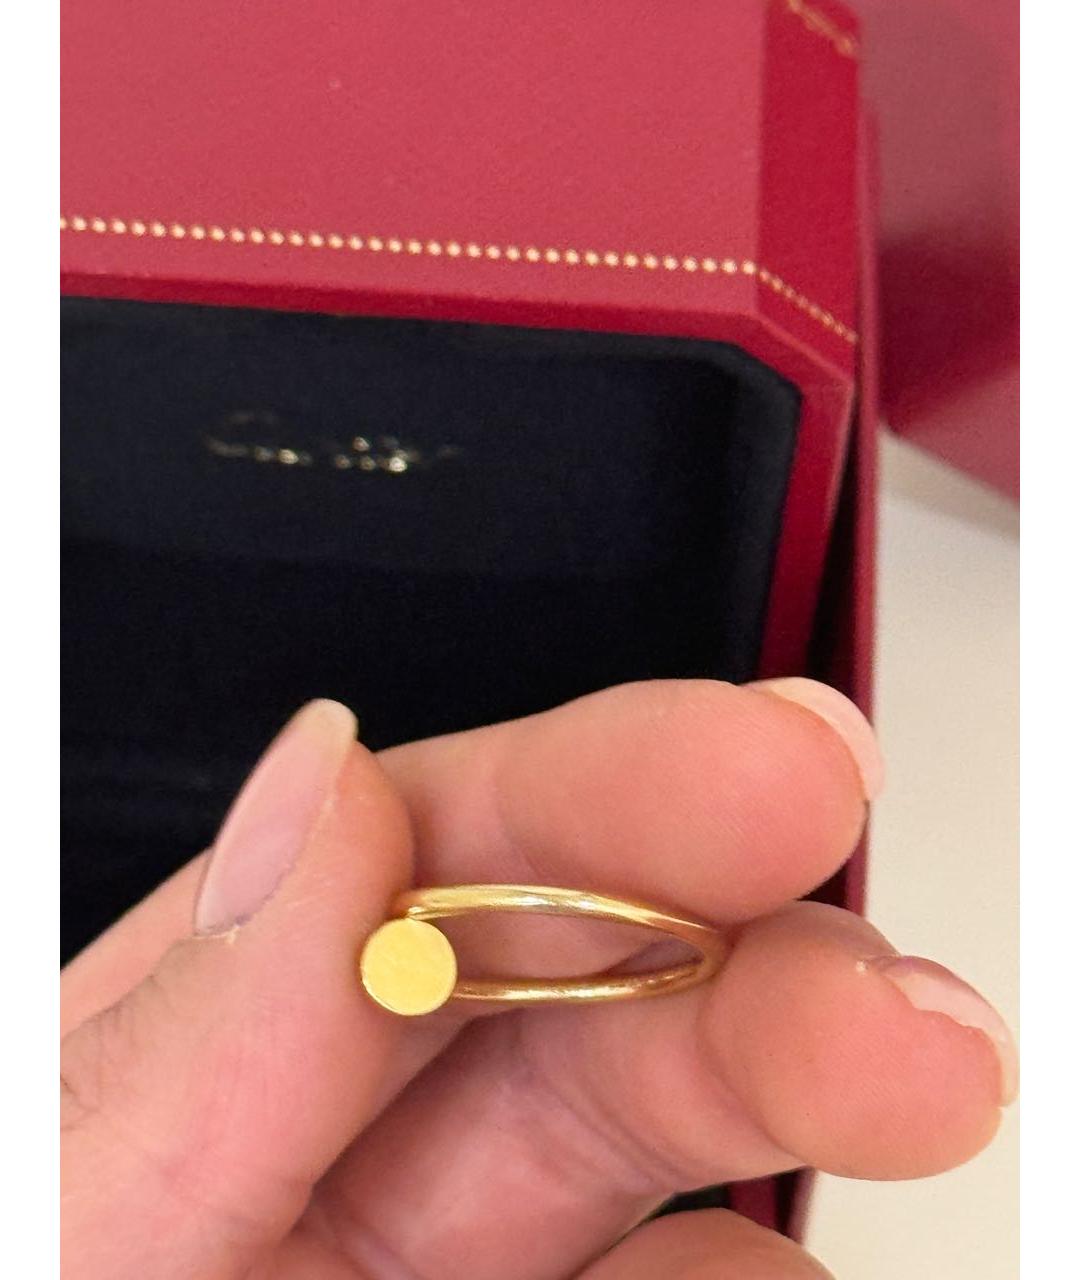 CARTIER Золотое кольцо из желтого золота, фото 4